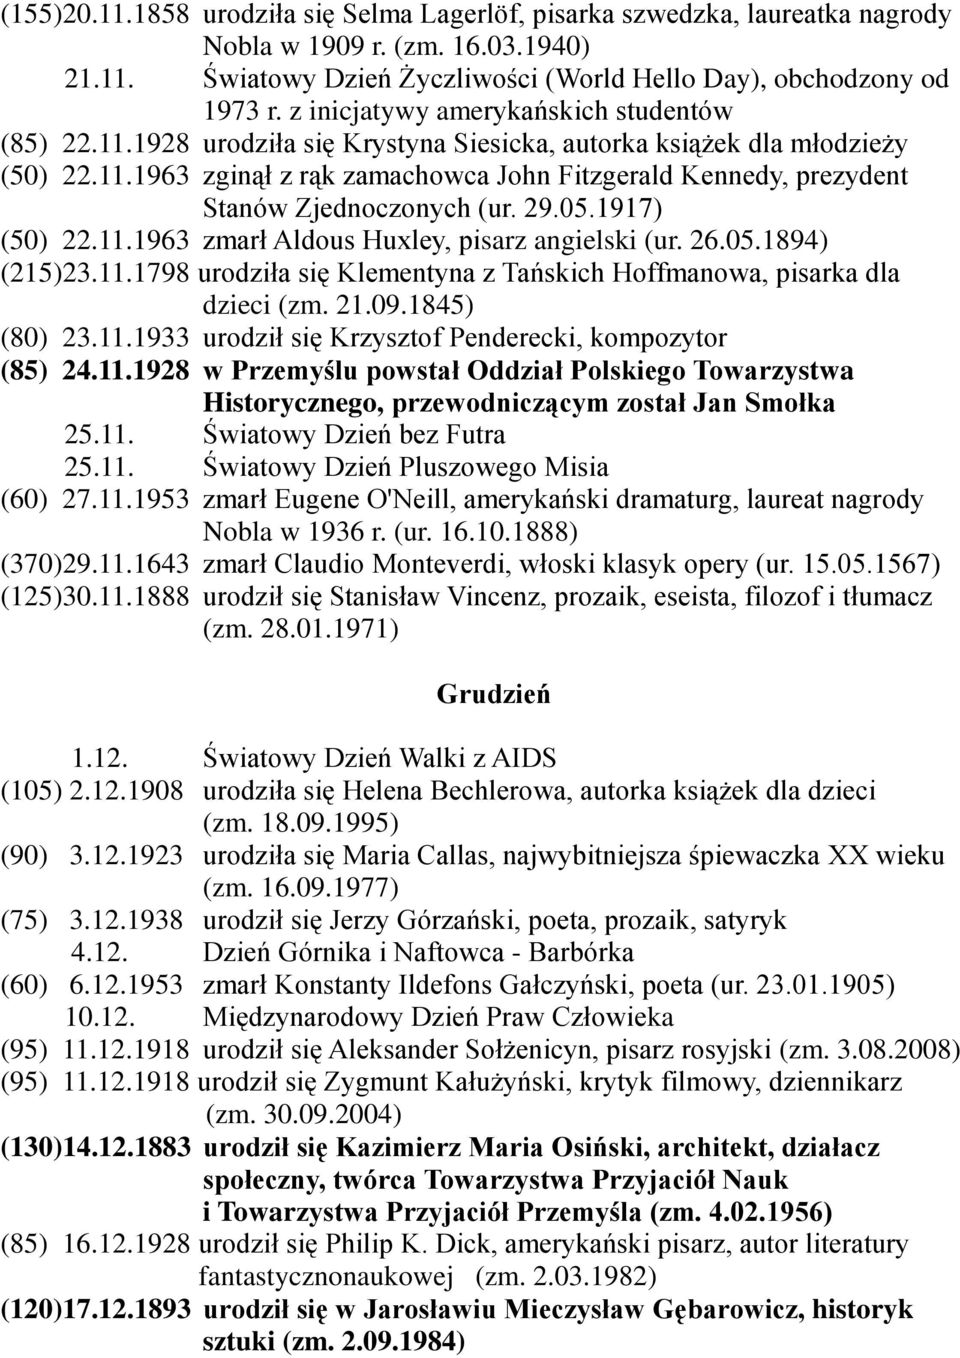 29.05.1917) (50) 22.11.1963 zmarł Aldous Huxley, pisarz angielski (ur. 26.05.1894) (215)23.11.1798 urodziła się Klementyna z Tańskich Hoffmanowa, pisarka dla dzieci (zm. 21.09.1845) (80) 23.11.1933 urodził się Krzysztof Penderecki, kompozytor (85) 24.